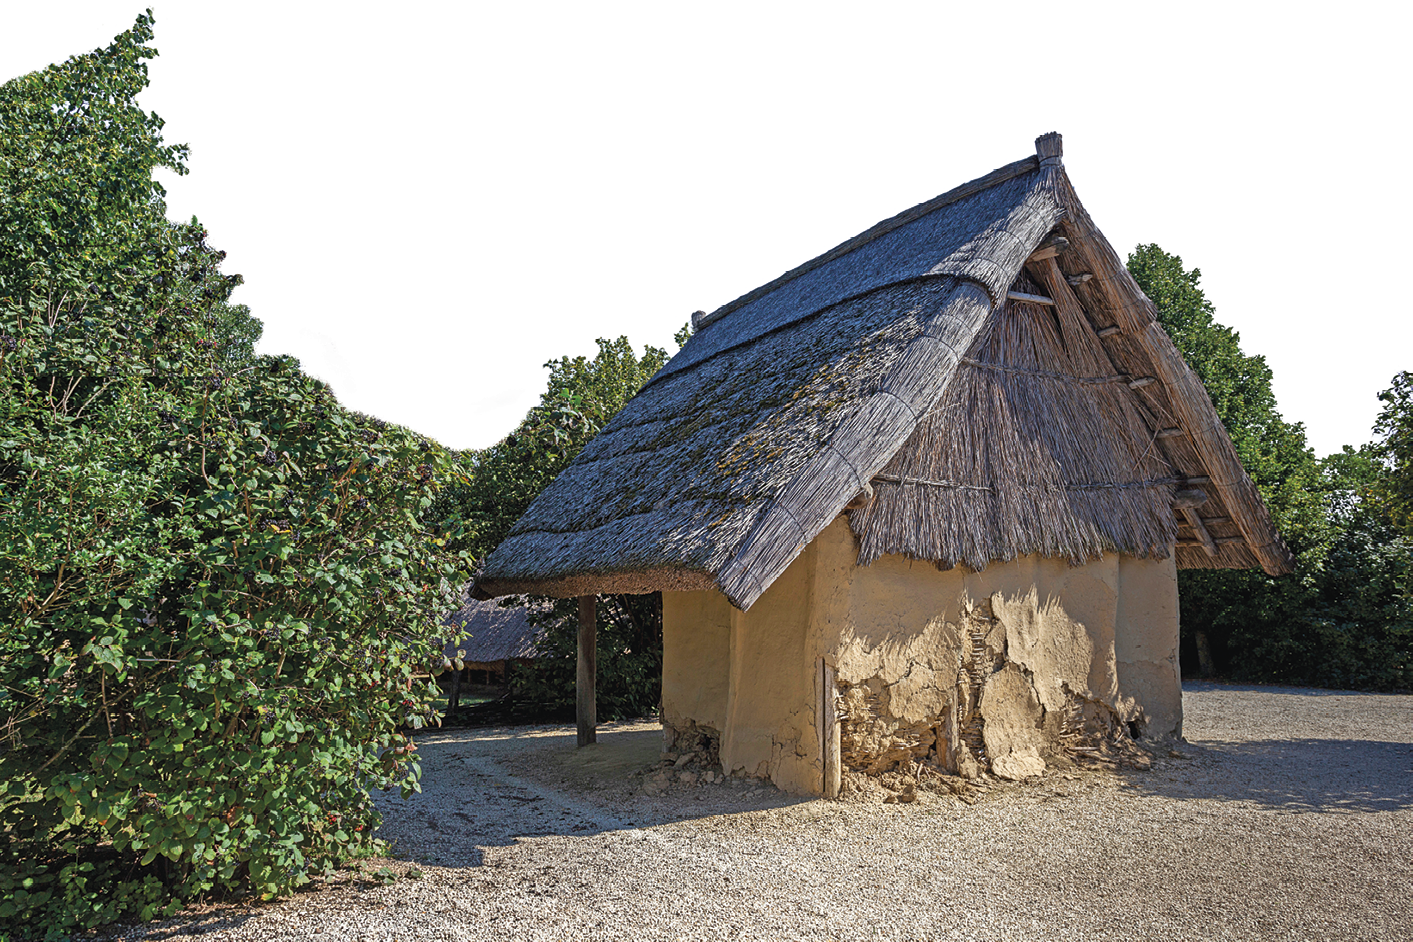 Fotografia. Pequena casa de barro com telhado triangular de palha em meio à vegetação.